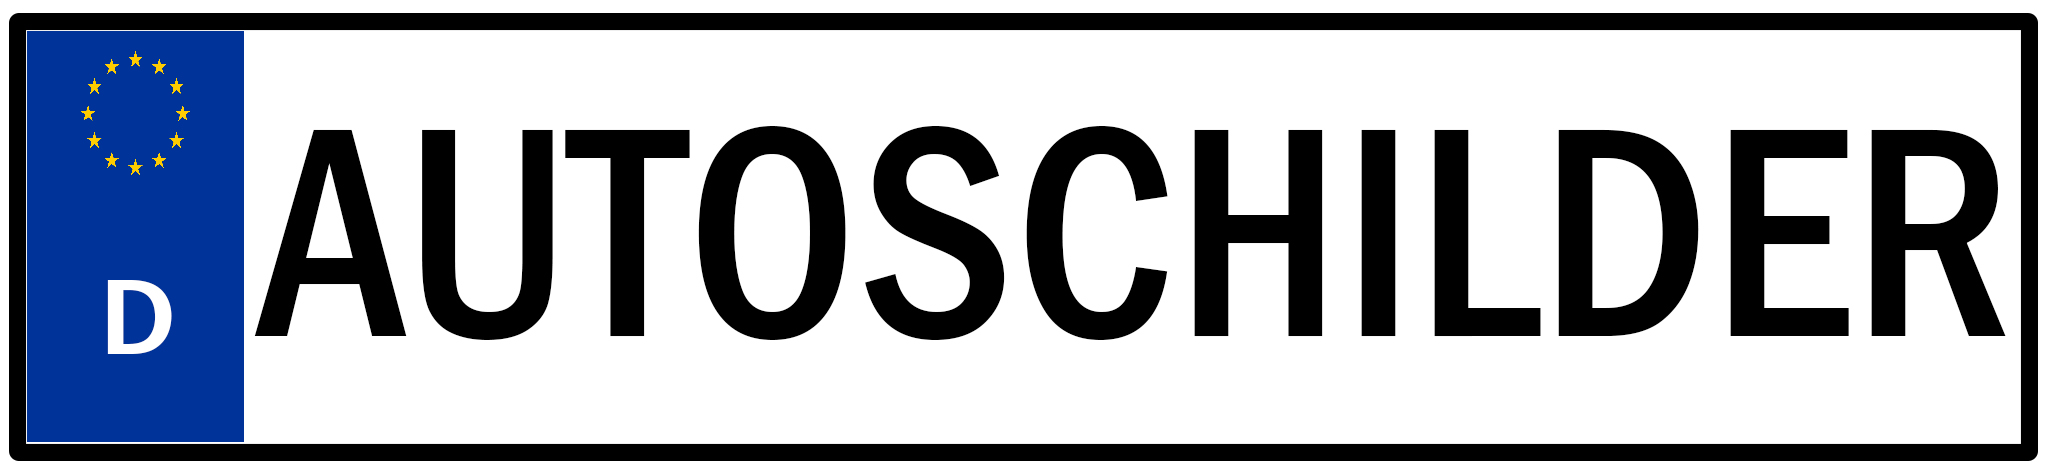 Autoschilder Koblenz